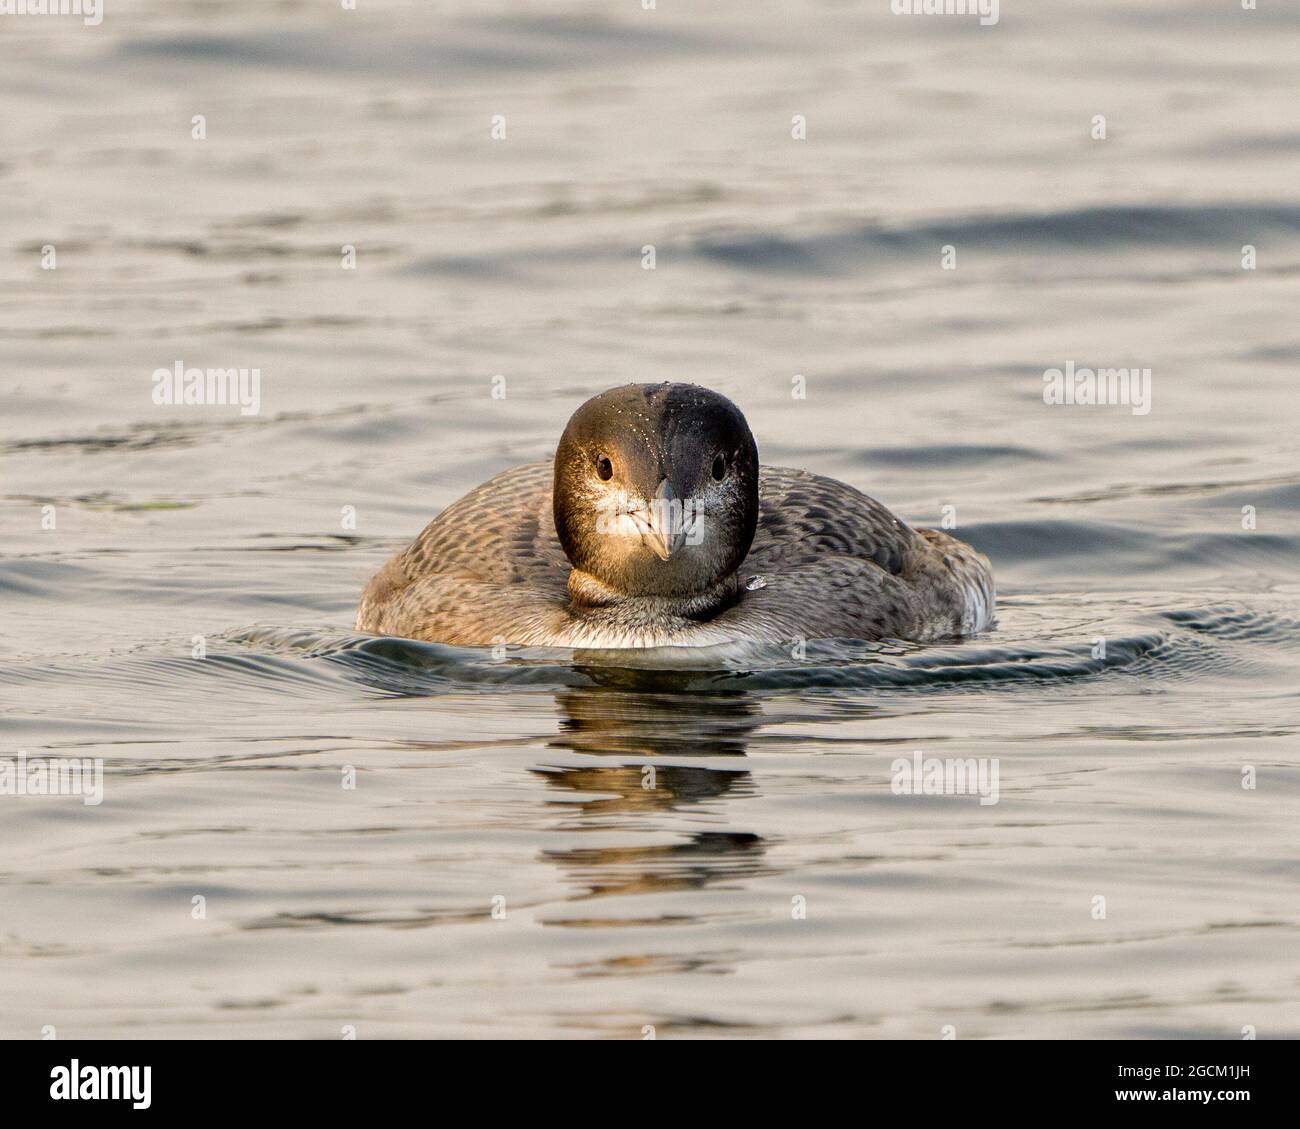 Comune Loon immaturo giovane uccello nuoto e guardando la macchina fotografica nel suo ambiente e habitat circostante, mostrando la sua crescente piume palcoscenico. Foto Stock